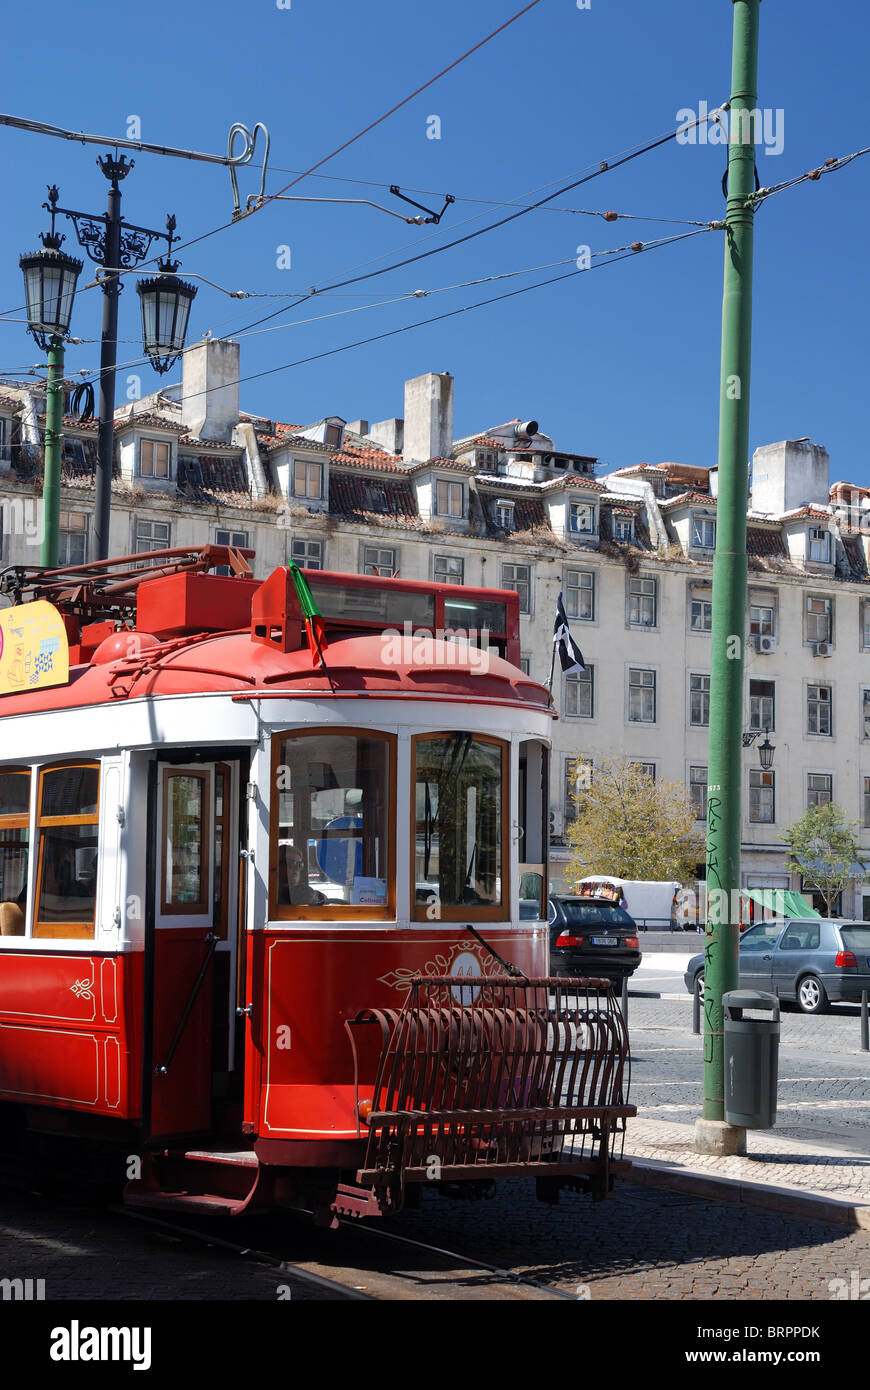 Praça Da Figueira Platz - Lissabon - Lisboa - Baixa - rote Straßenbahn - Detail - Portugal Stockfoto